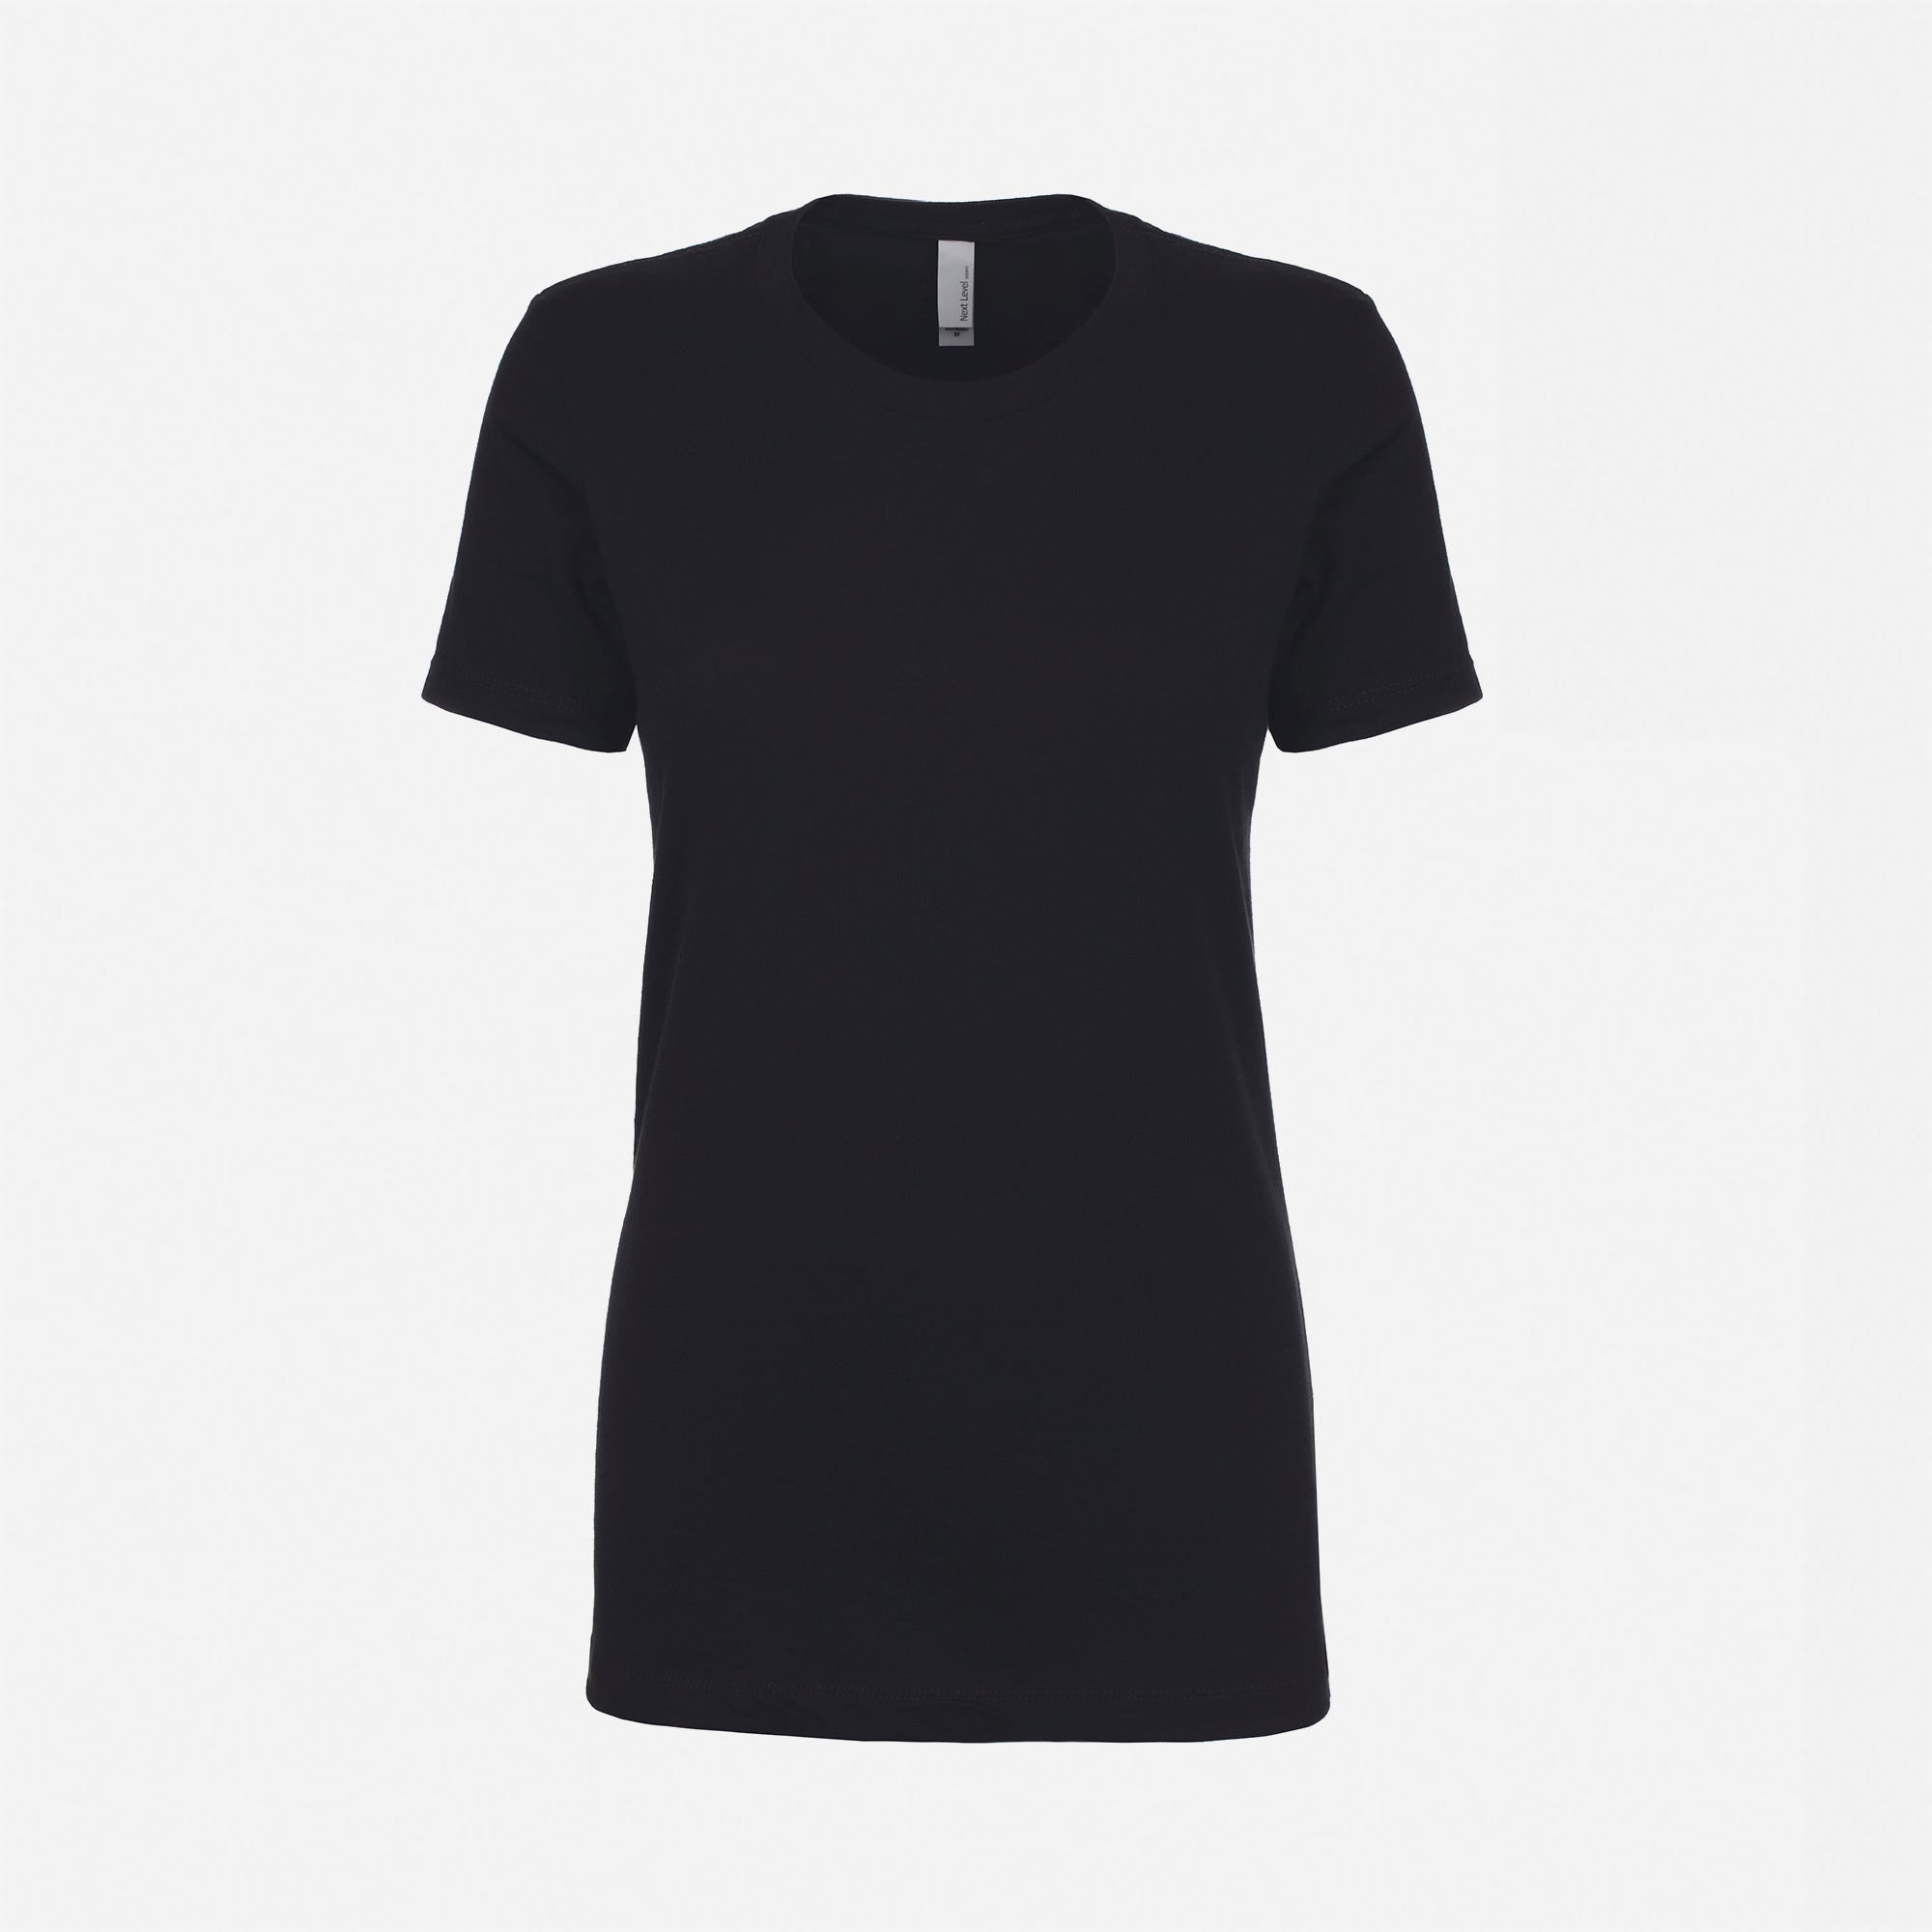 Cotton Boyfriend T-Shirt Black 3900 Next Level Apparel Women's Front View Wholesale